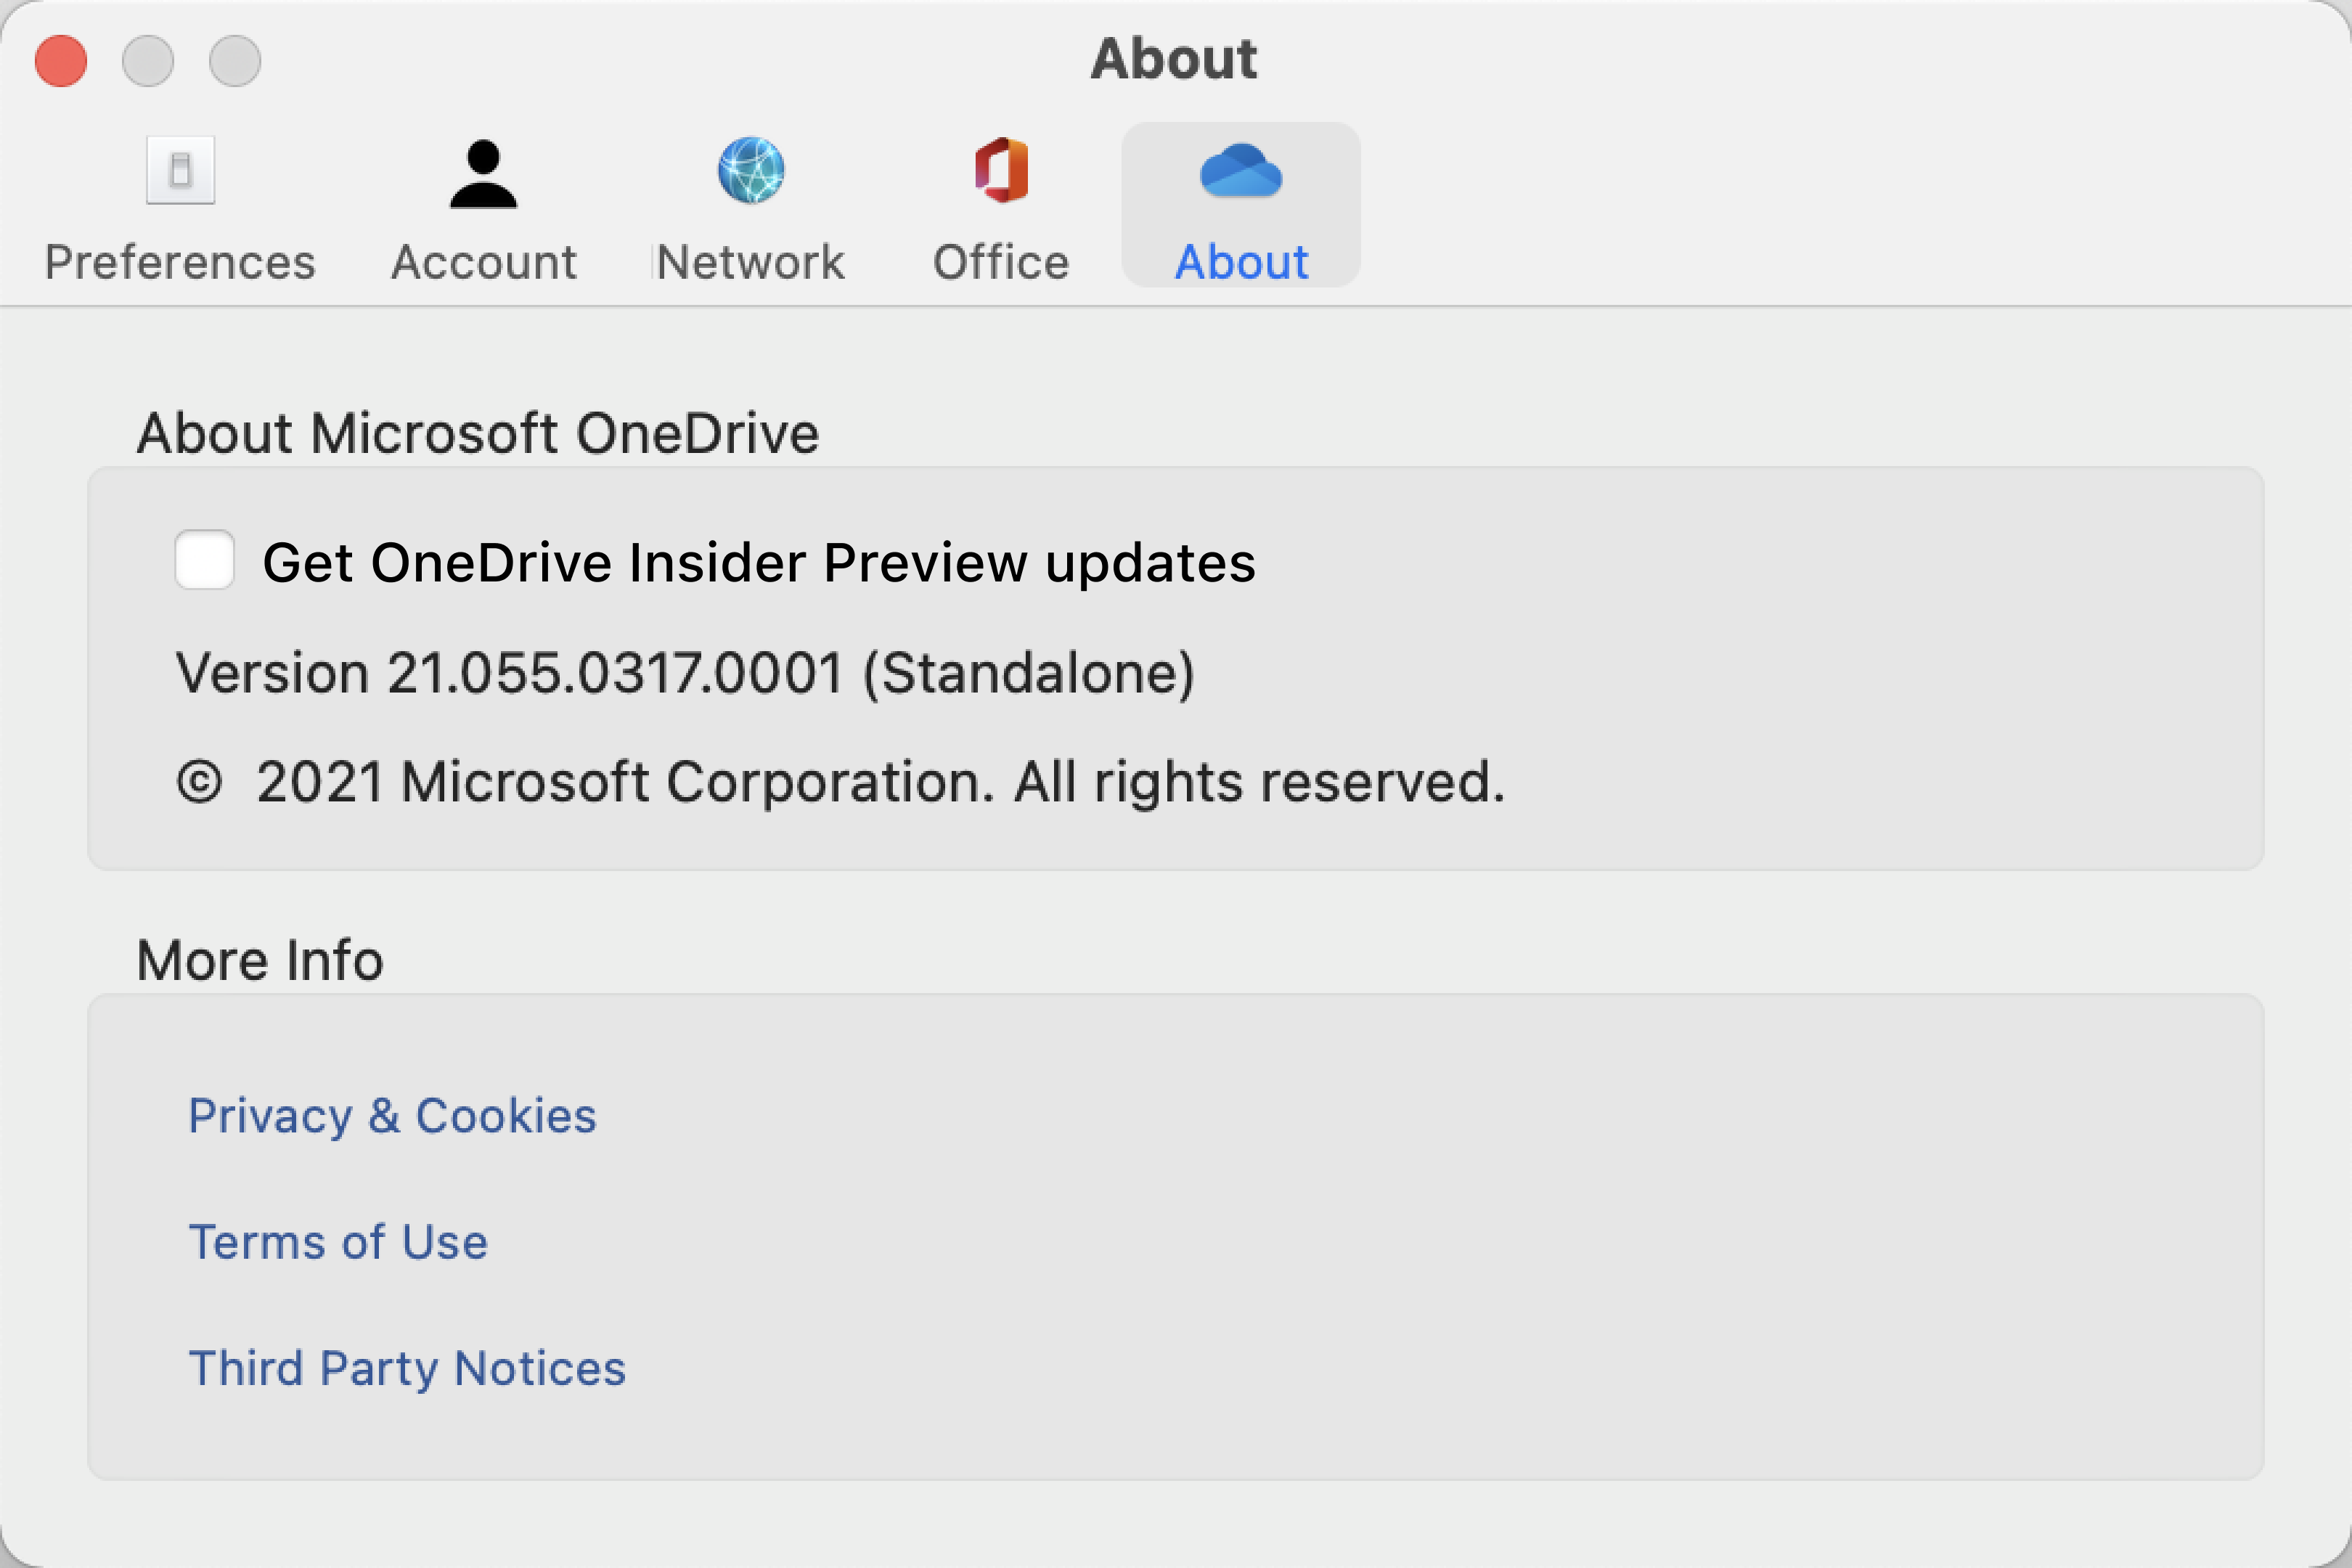 Hiển thị màn hình Giới thiệu về OneDrive trên máy Mac. Thông tin về bản dựng và phiên bản nằm trong phần "Giới thiệu về Microsoft OneDrive".